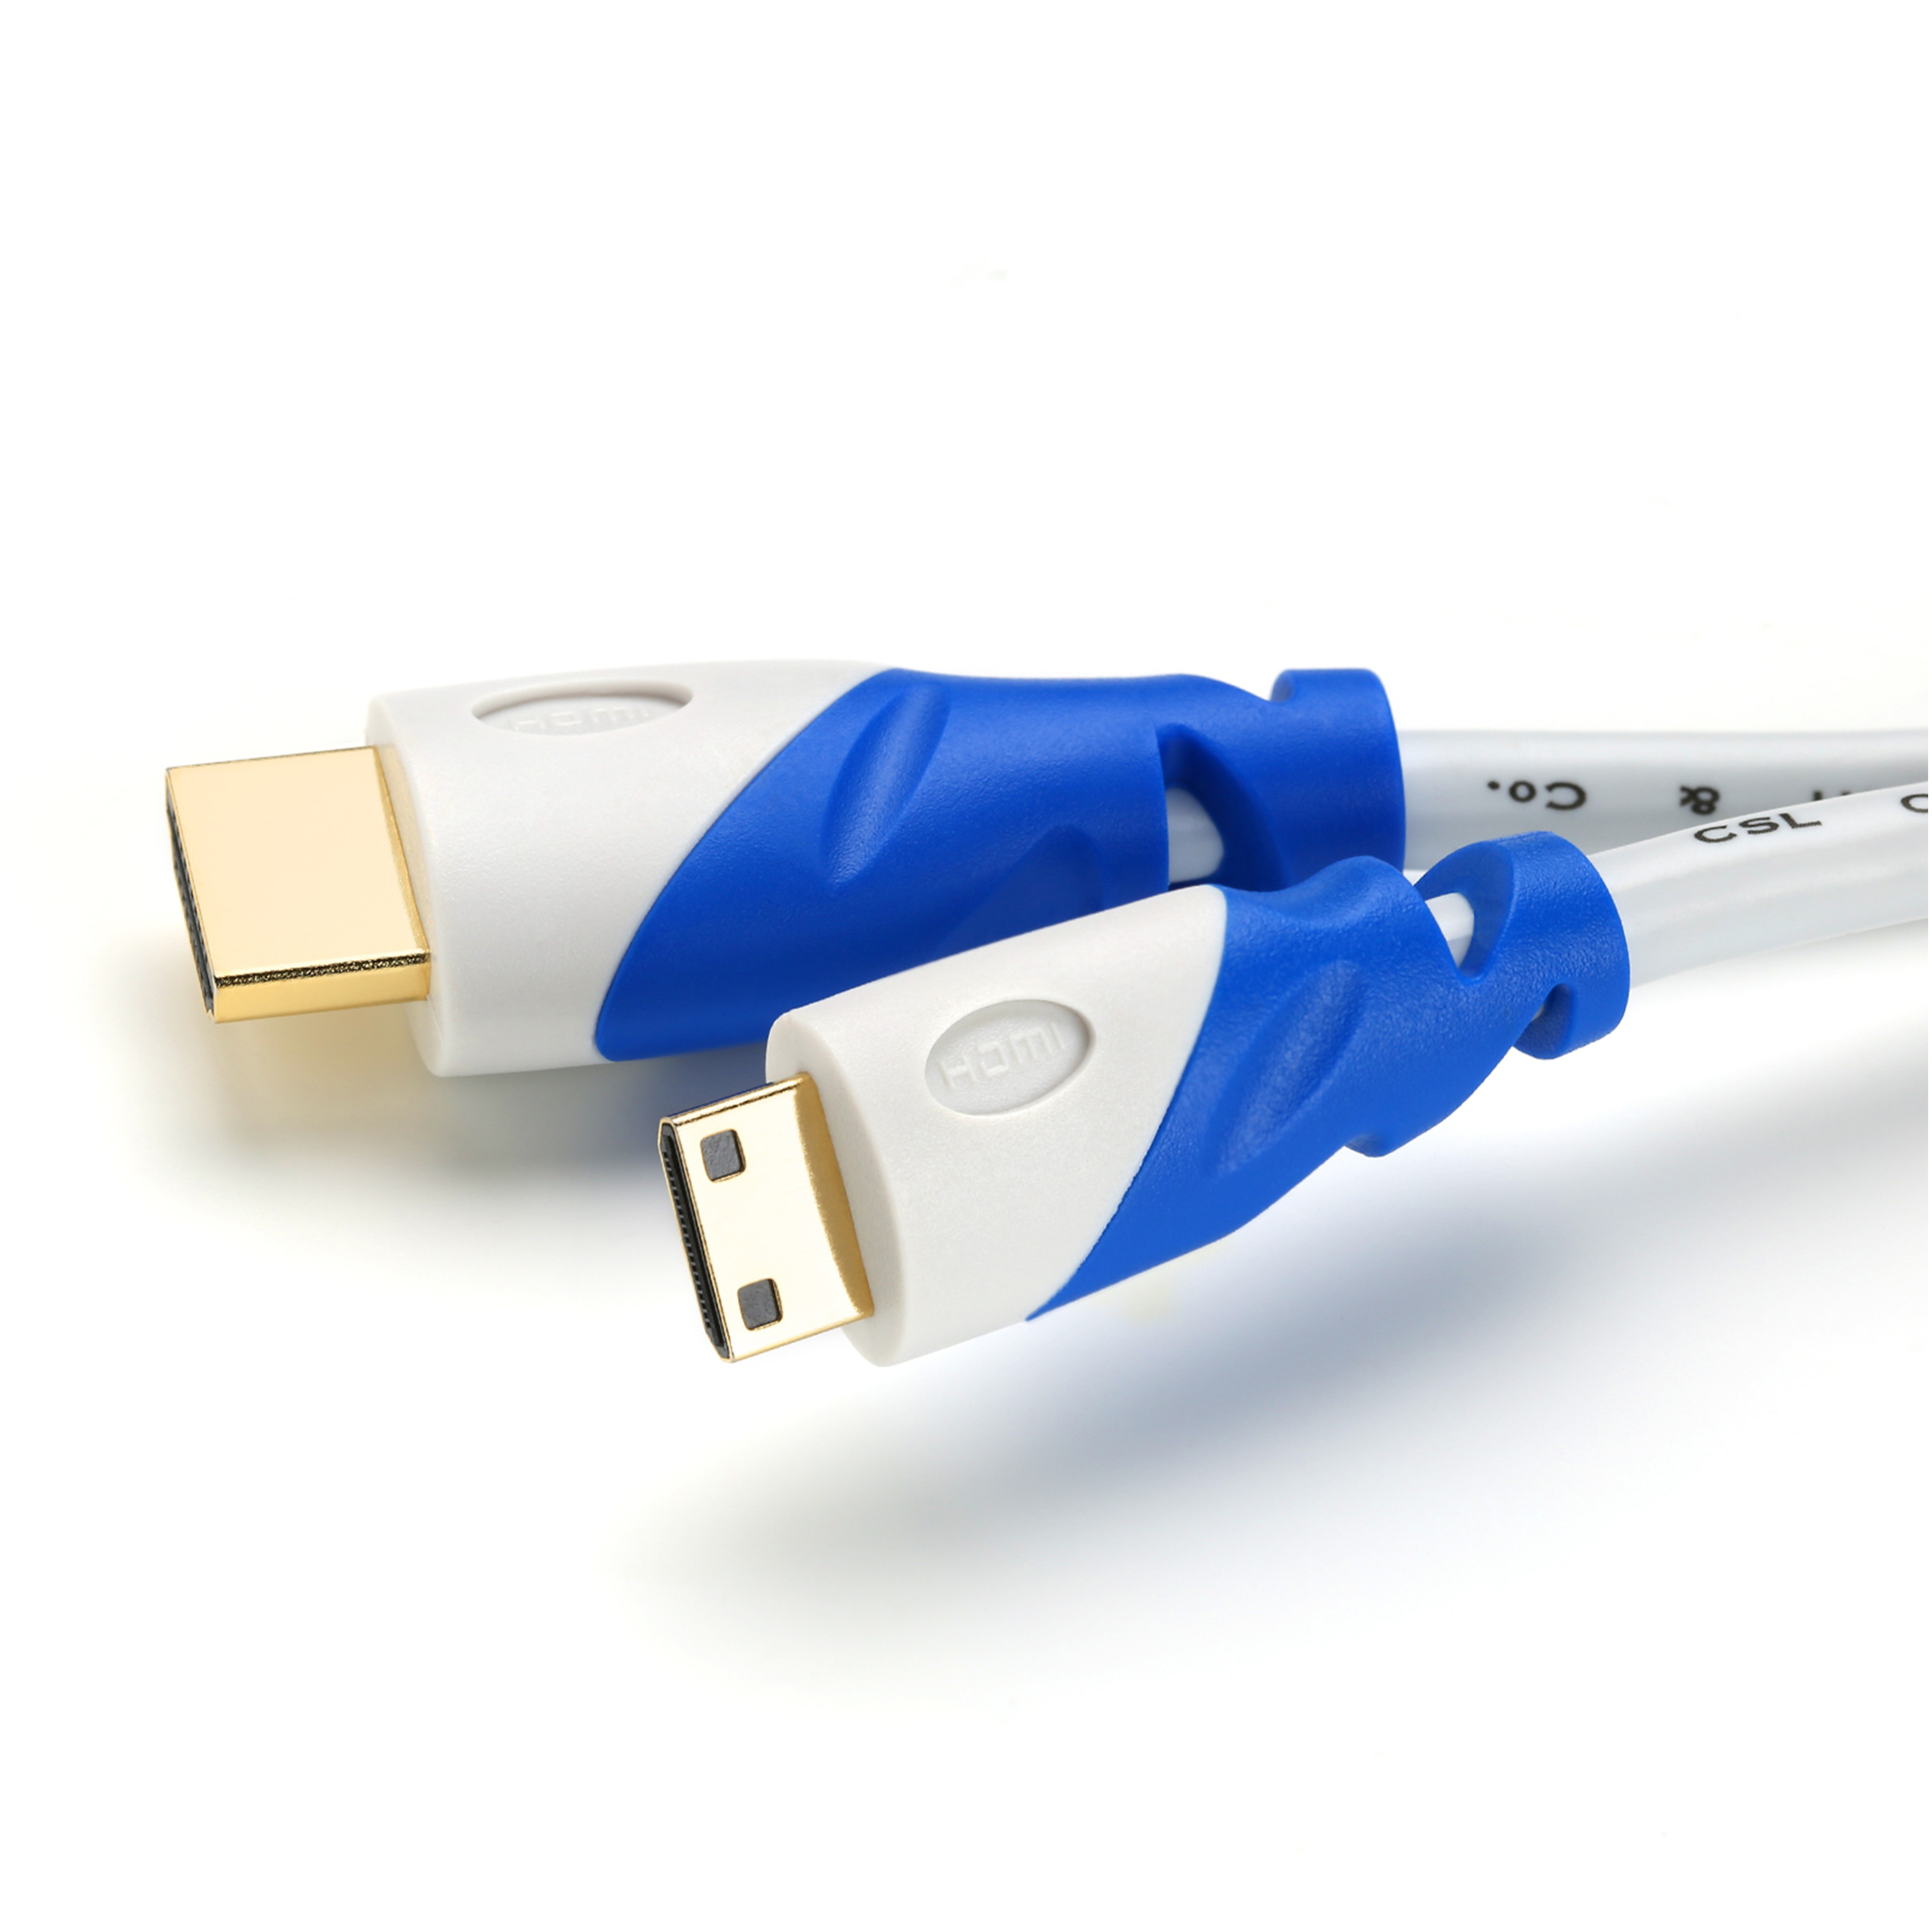 CSL HDMI 2.0 Kabel, gewinkelt, 2m weiß/blau Kabel, HDMI